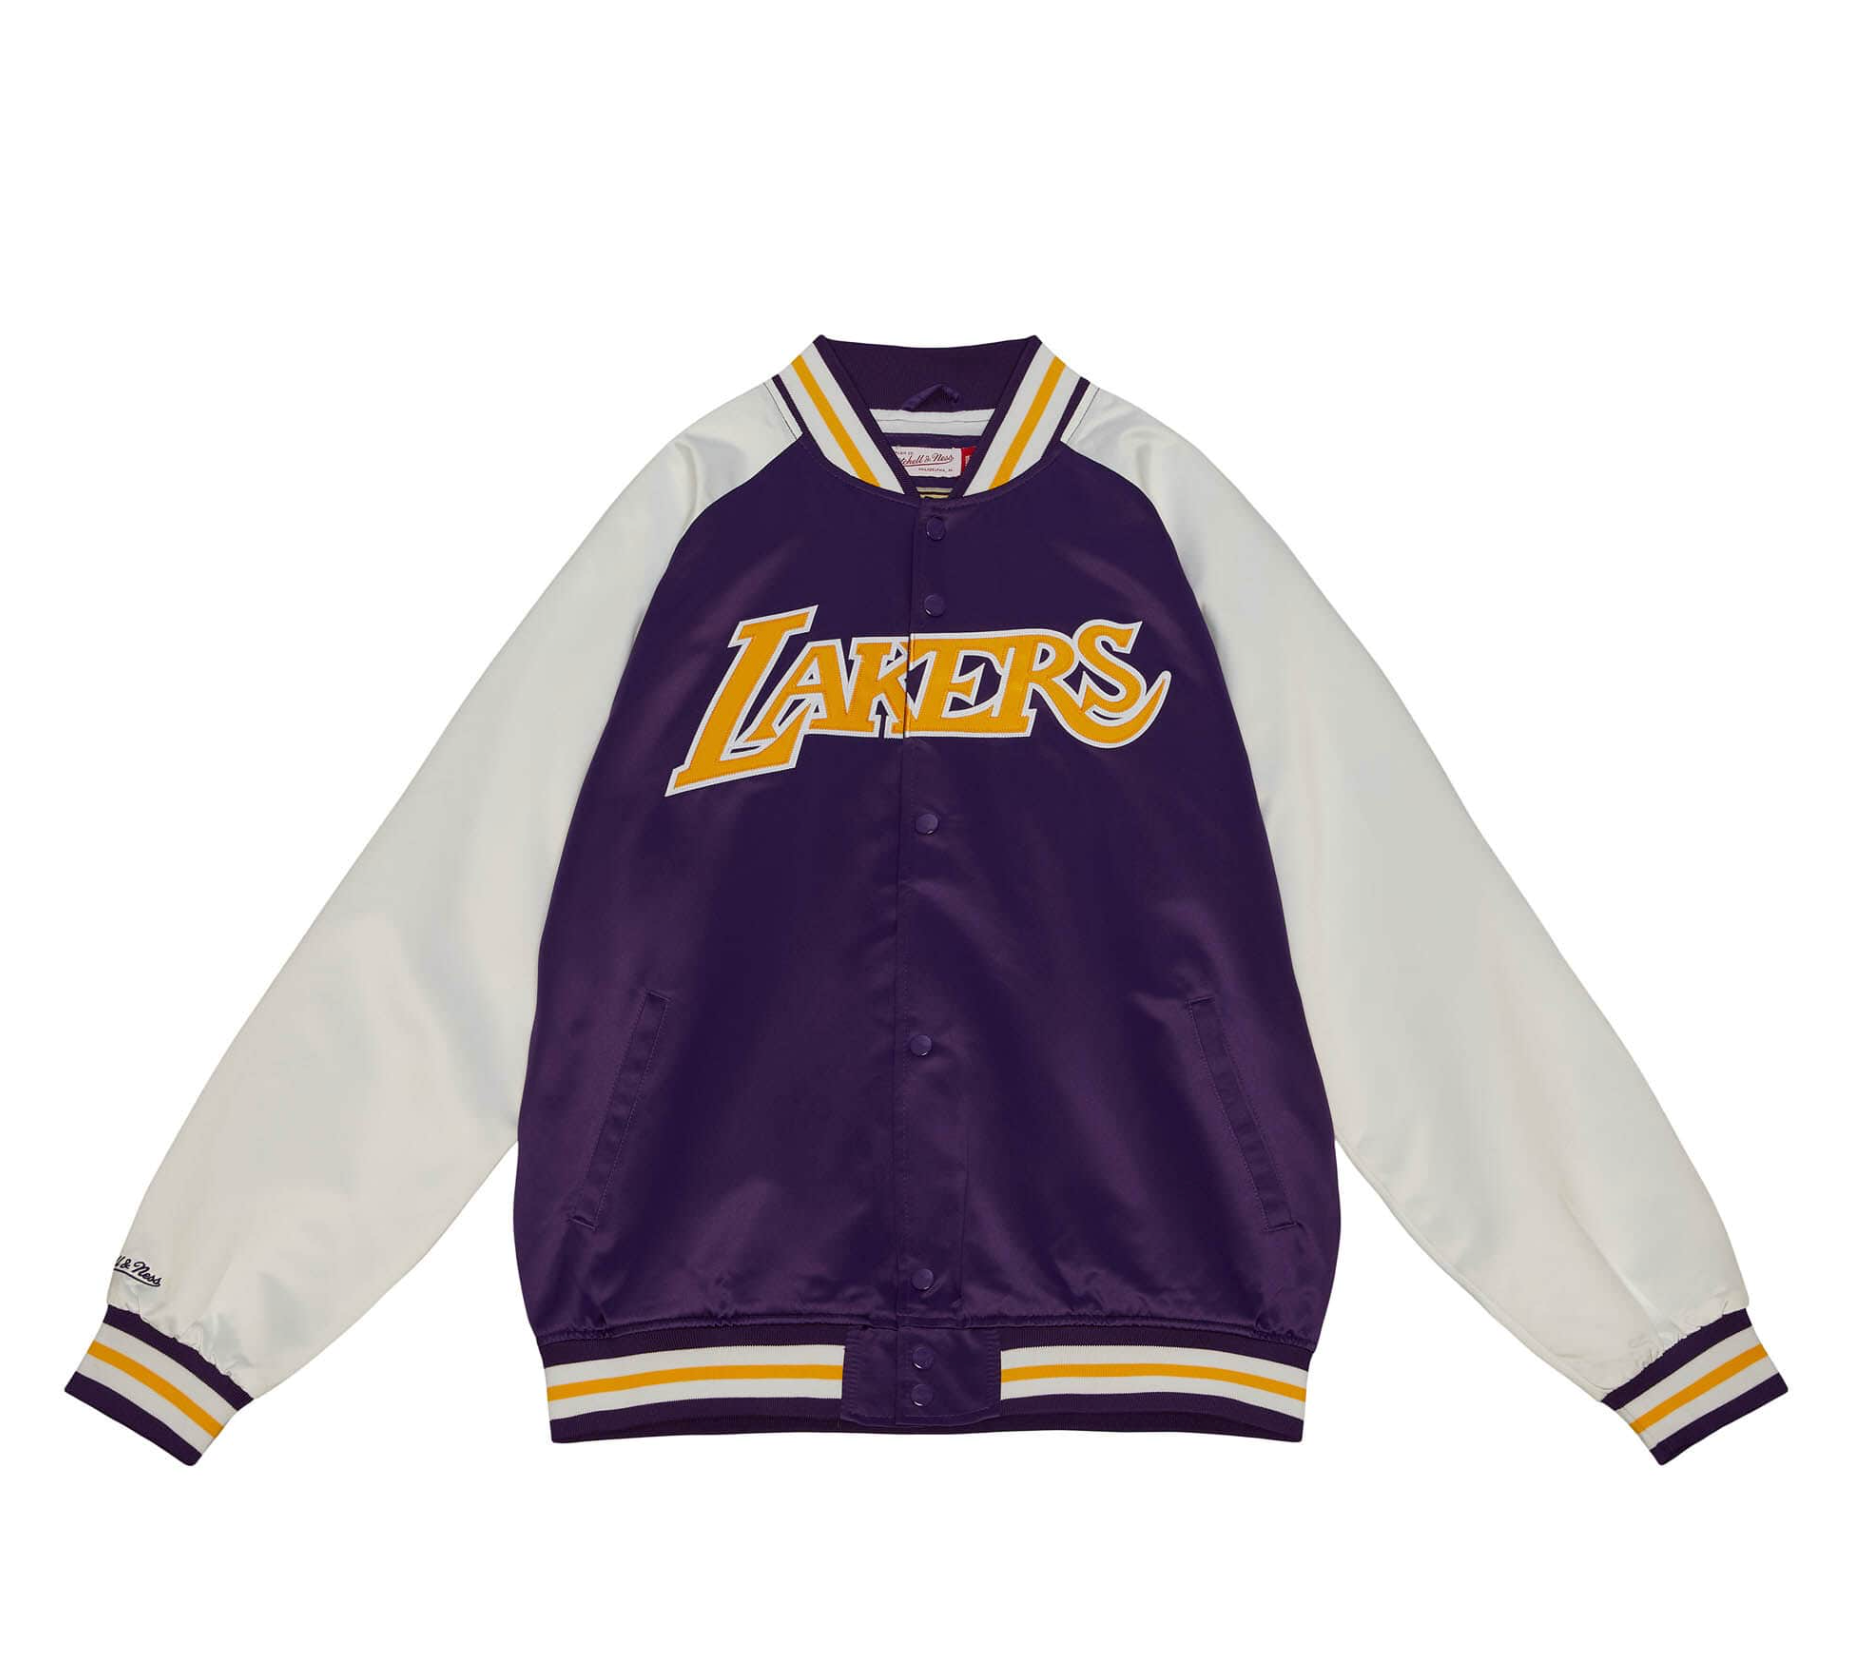 Vintage Lakers Jacket 